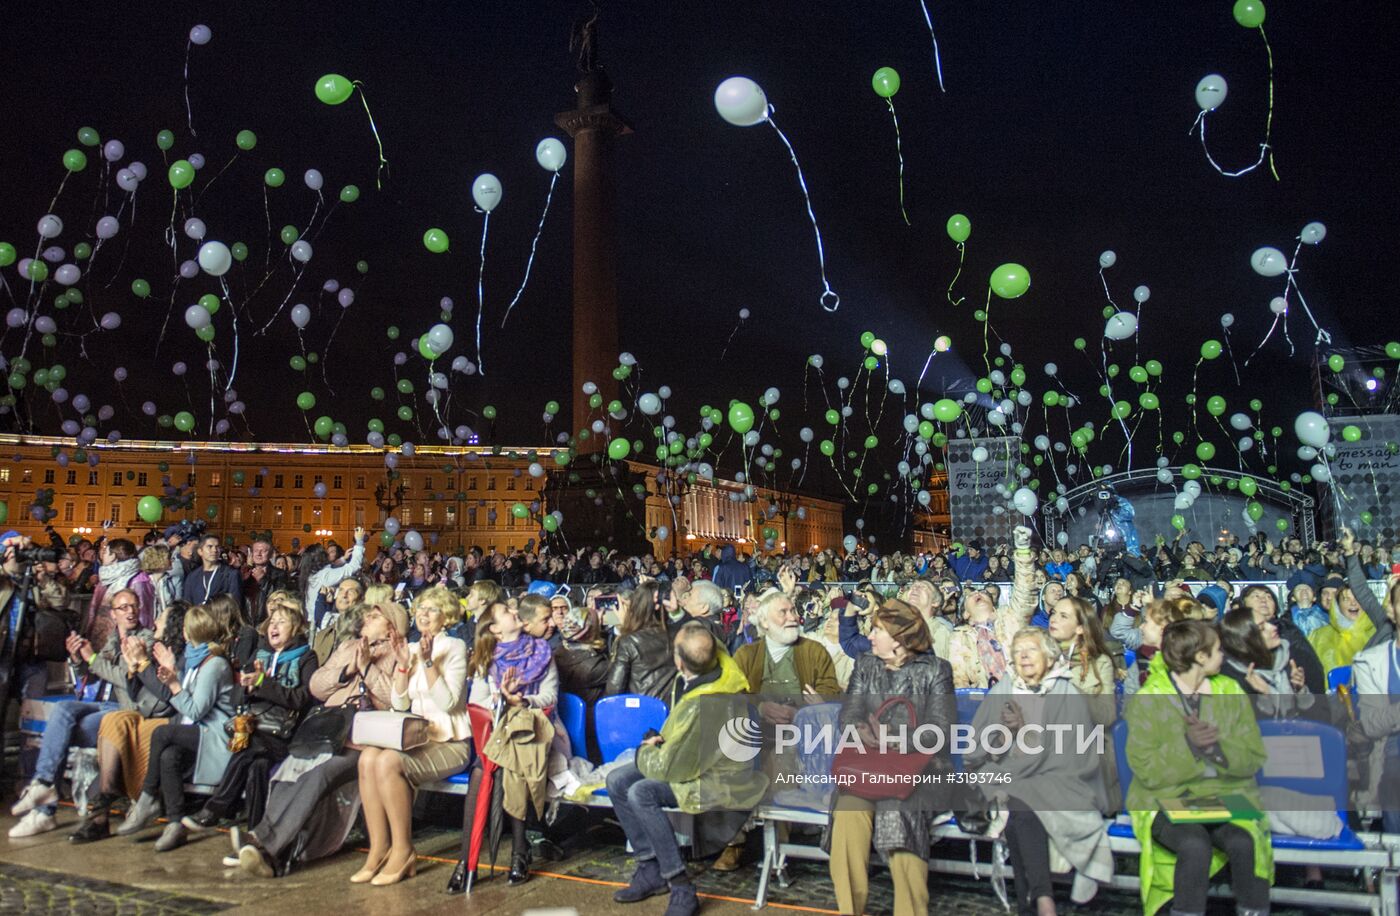 Церемония открытия фестиваля "Послание к Человеку" в Санкт-Петербурге